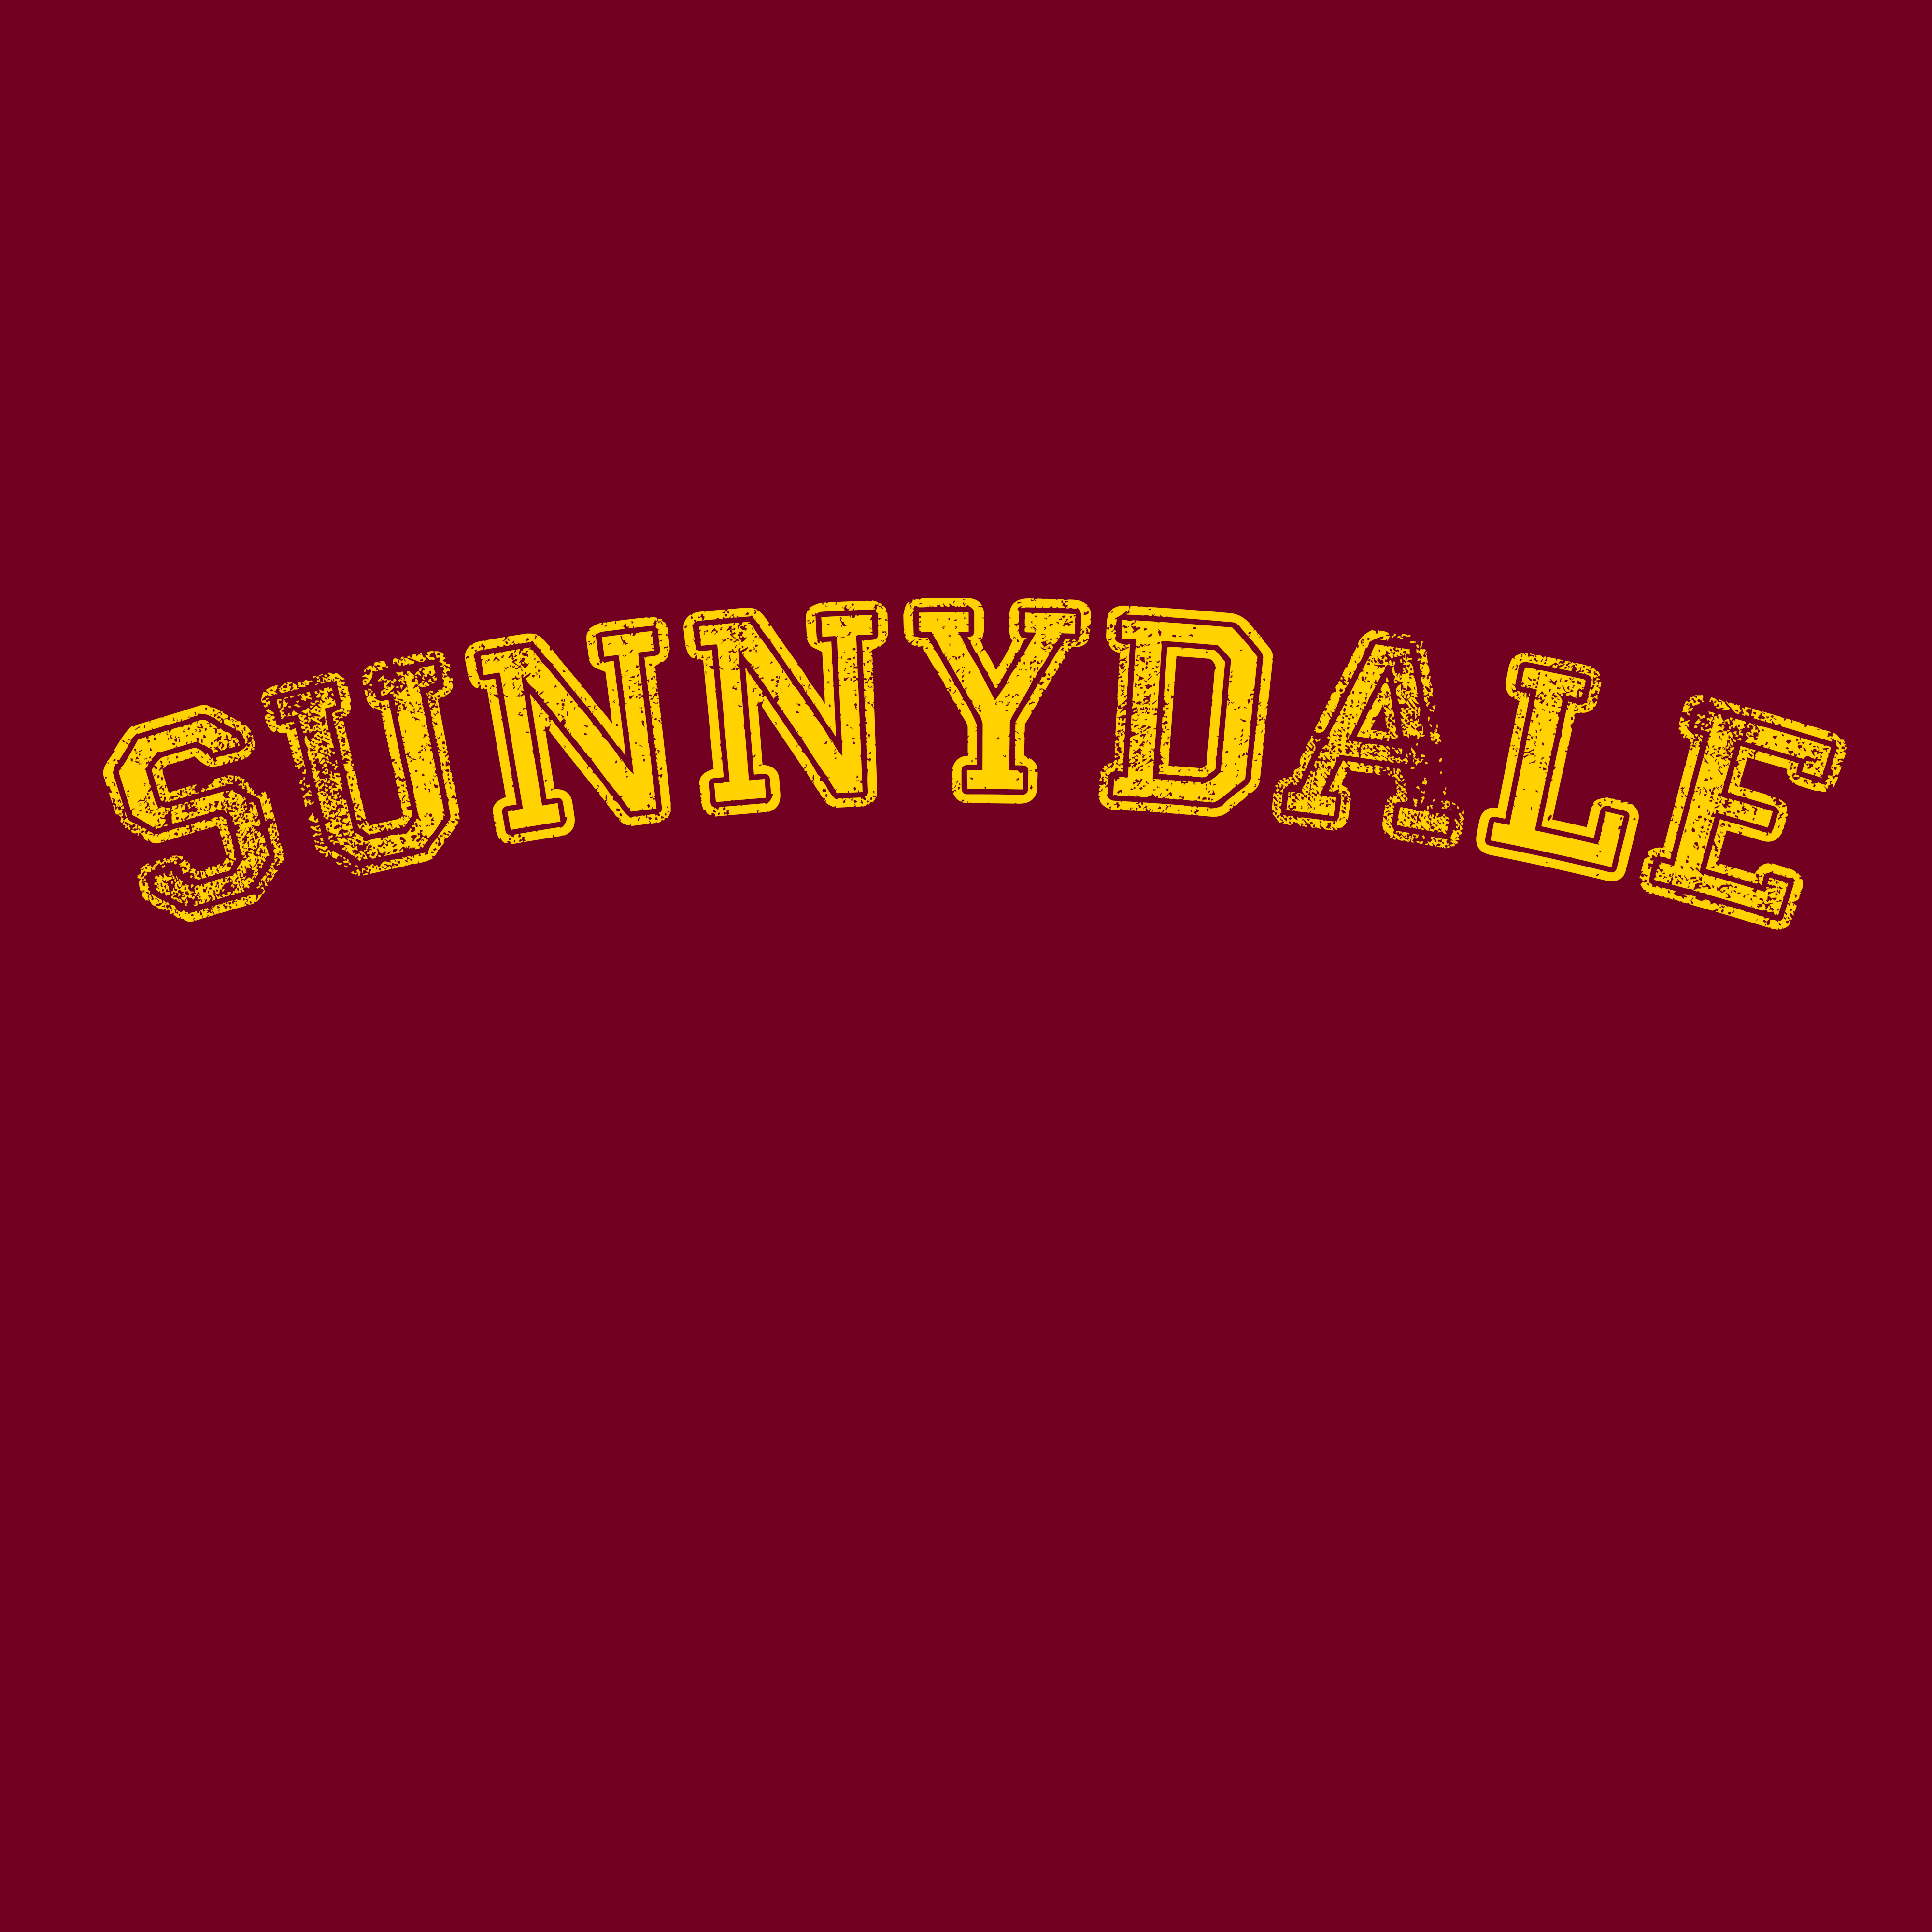 SunnydaleHigh001.jpg